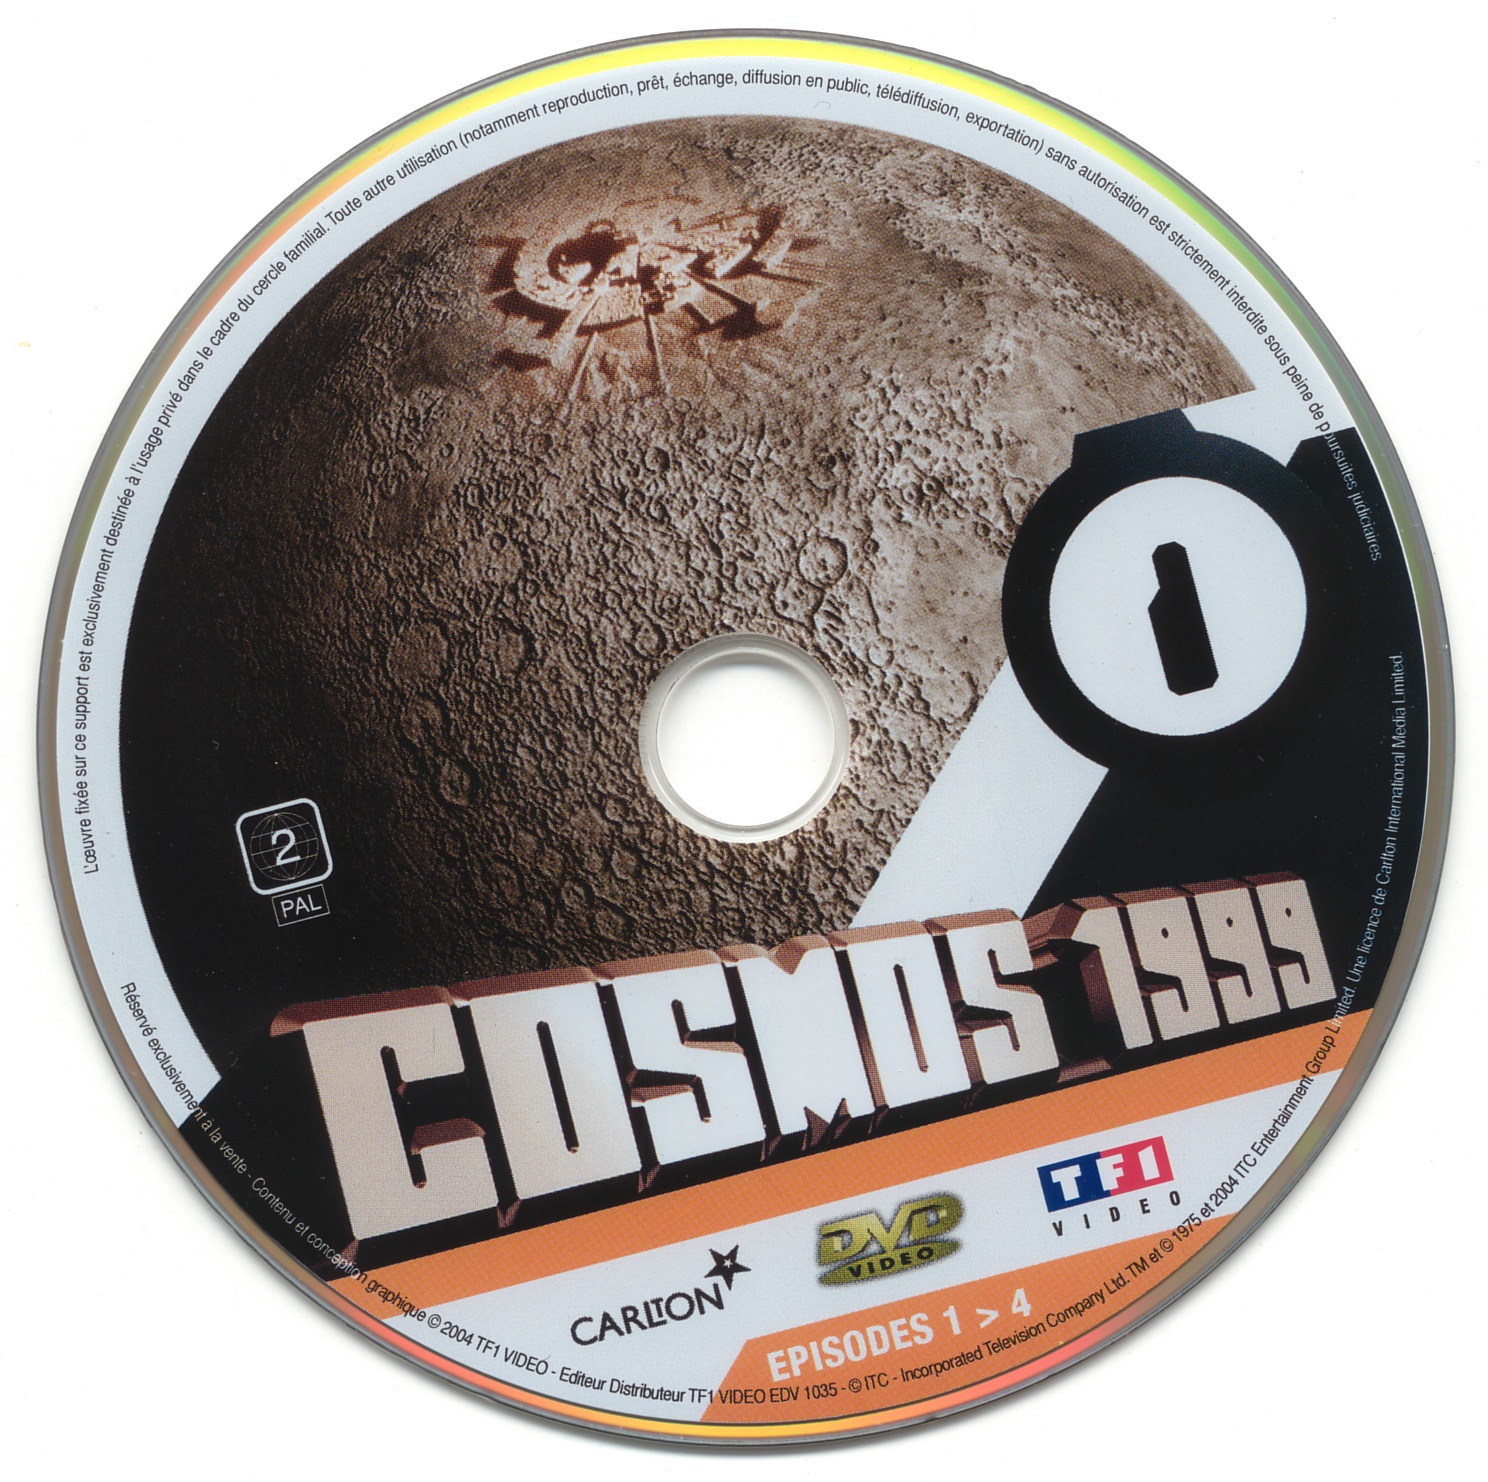 Cosmos 1999 saison 1 dvd 1